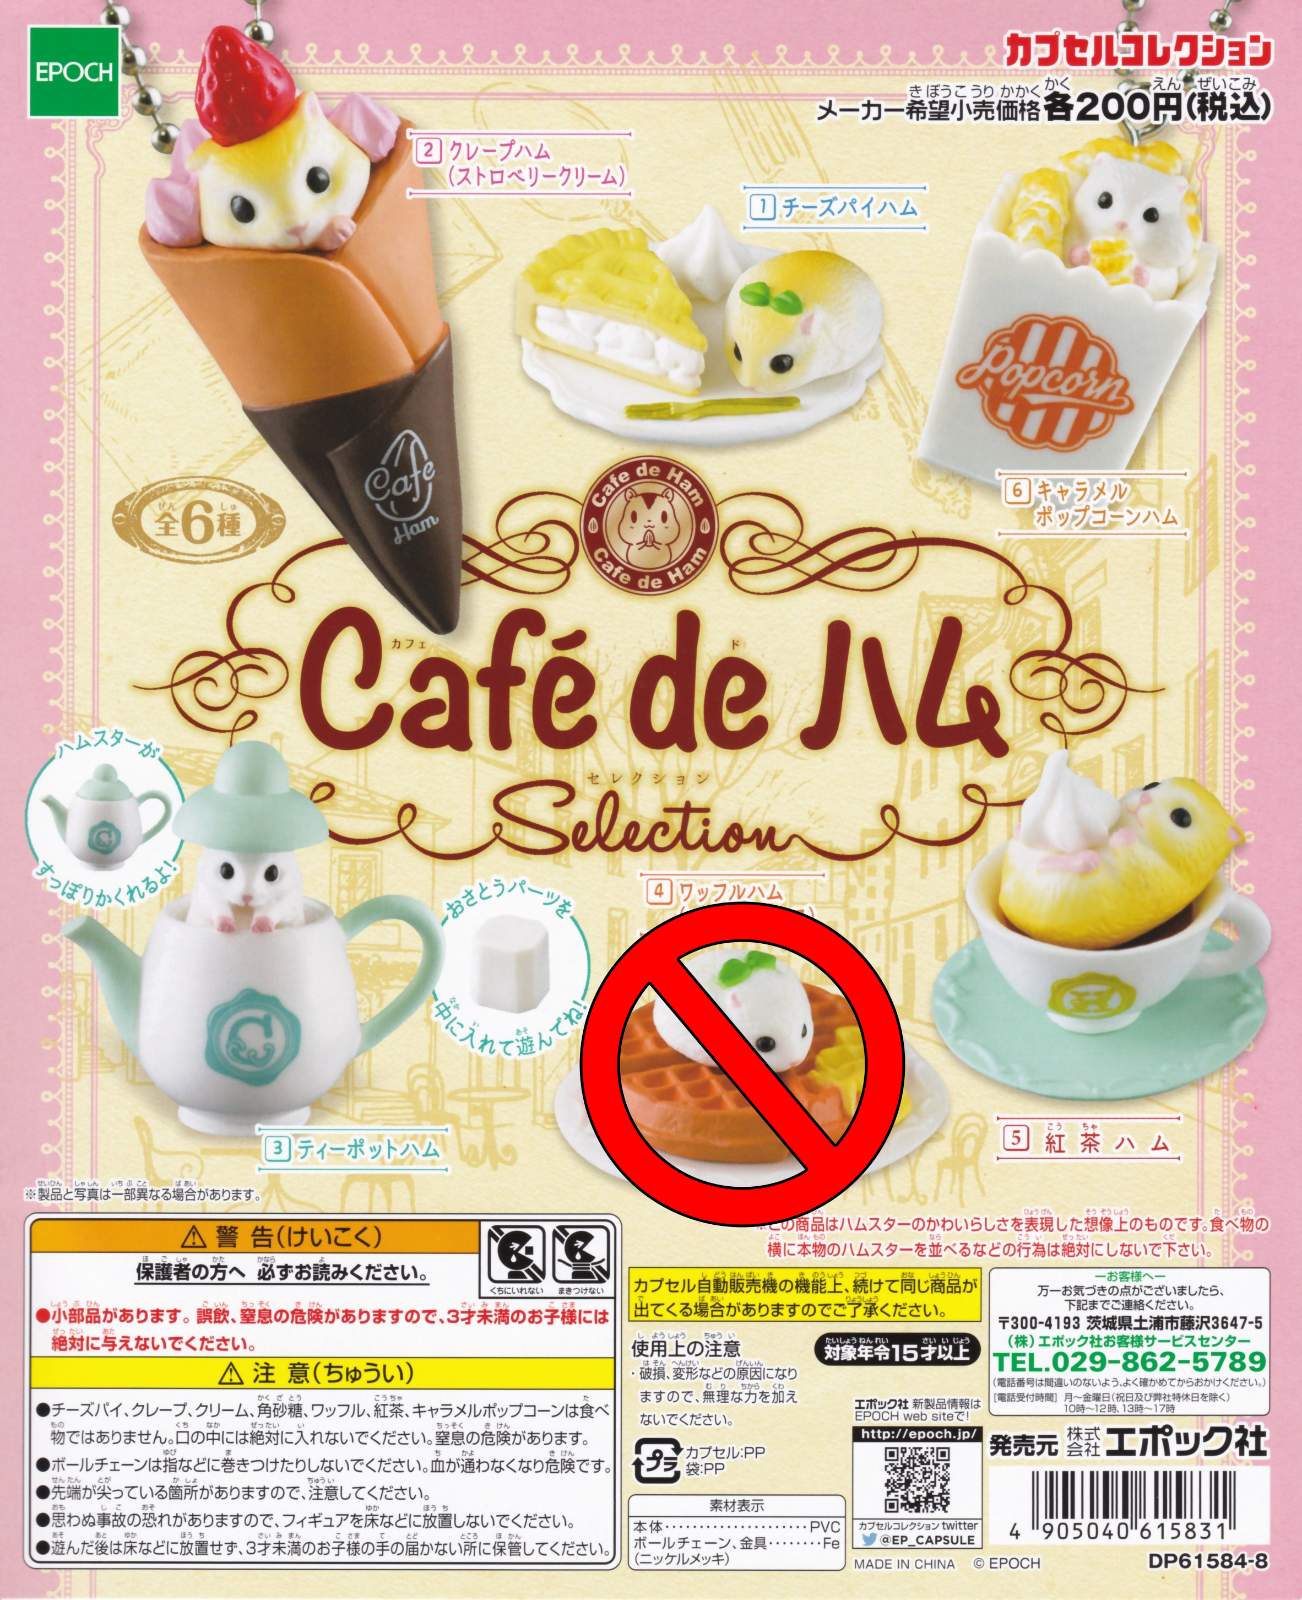 Cafe de Ham Selection Hamster Figurine 5pcs set GASHAPON EPOCH (one missing) Без бренда